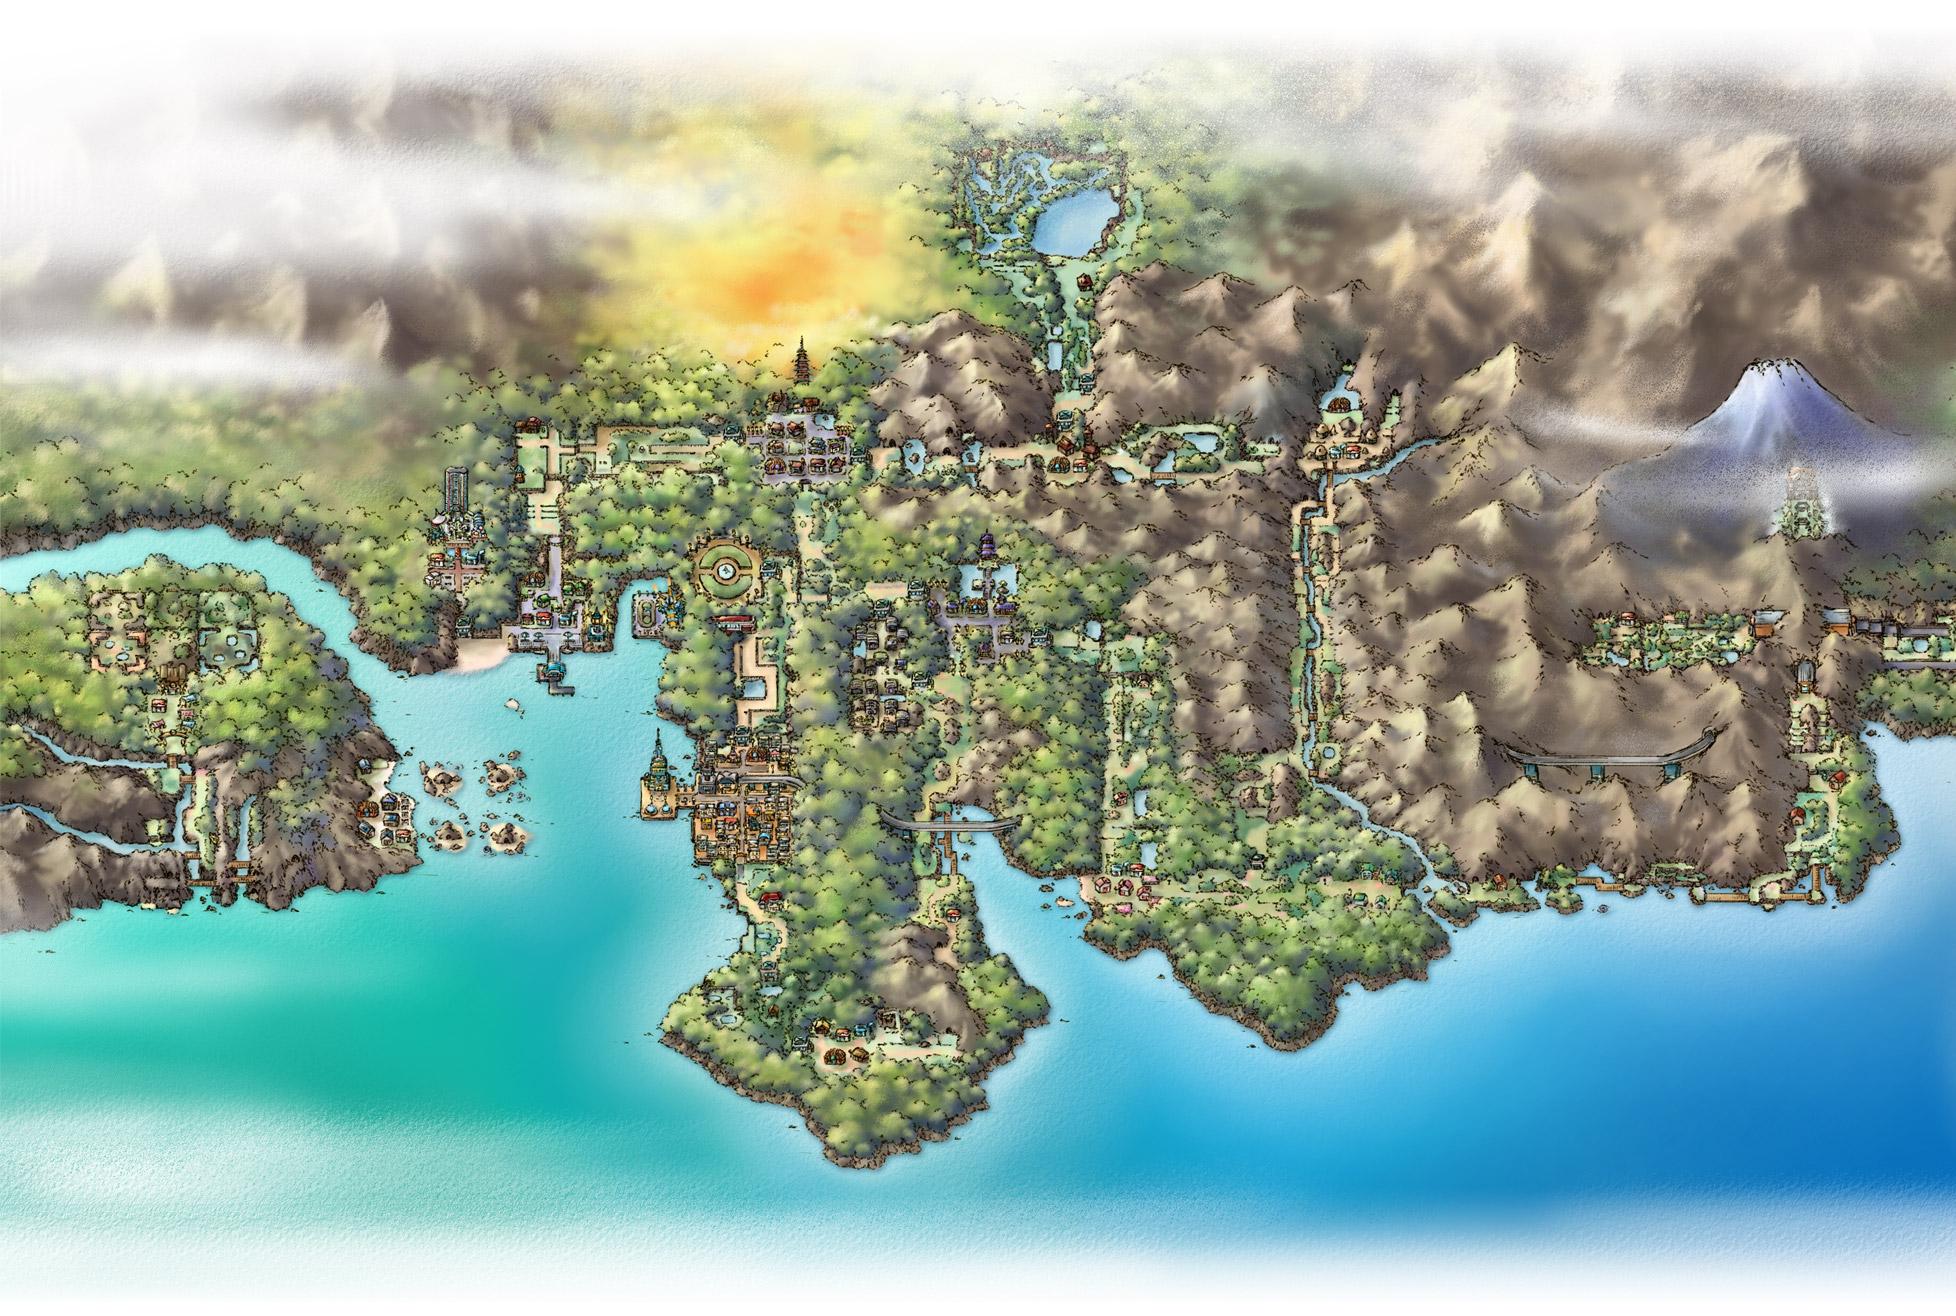 Pokemon HeartGold and SoulSilver :: The Johto Safari Zone